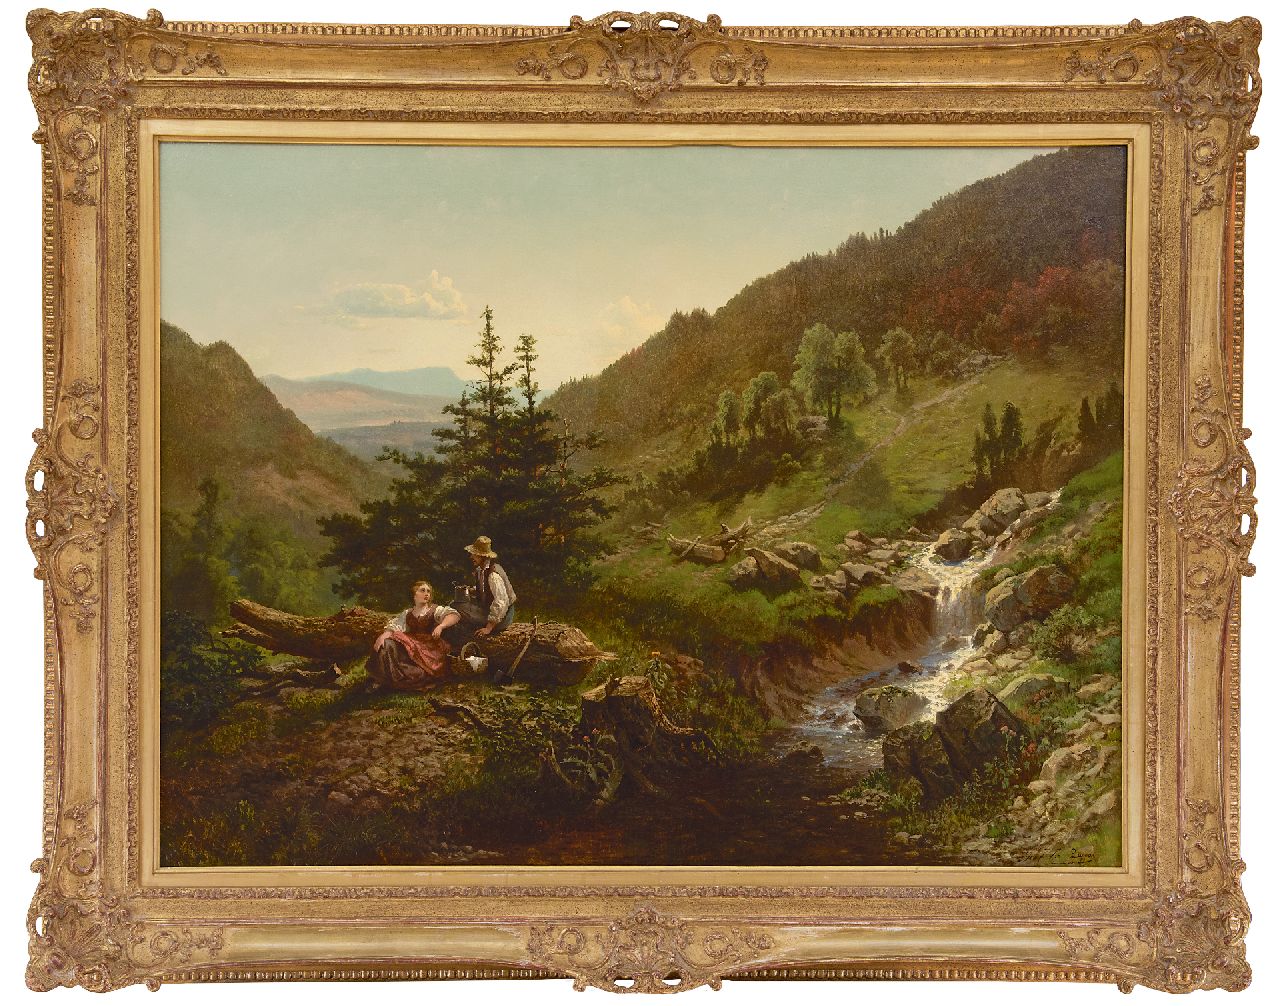 Luppen J.G.A. van | 'Joseph' Gérard Adrien van Luppen | Schilderijen te koop aangeboden | Arcadisch landschap met herderspaar, olieverf op doek 76,2 x 101,2 cm, gesigneerd rechtsonder